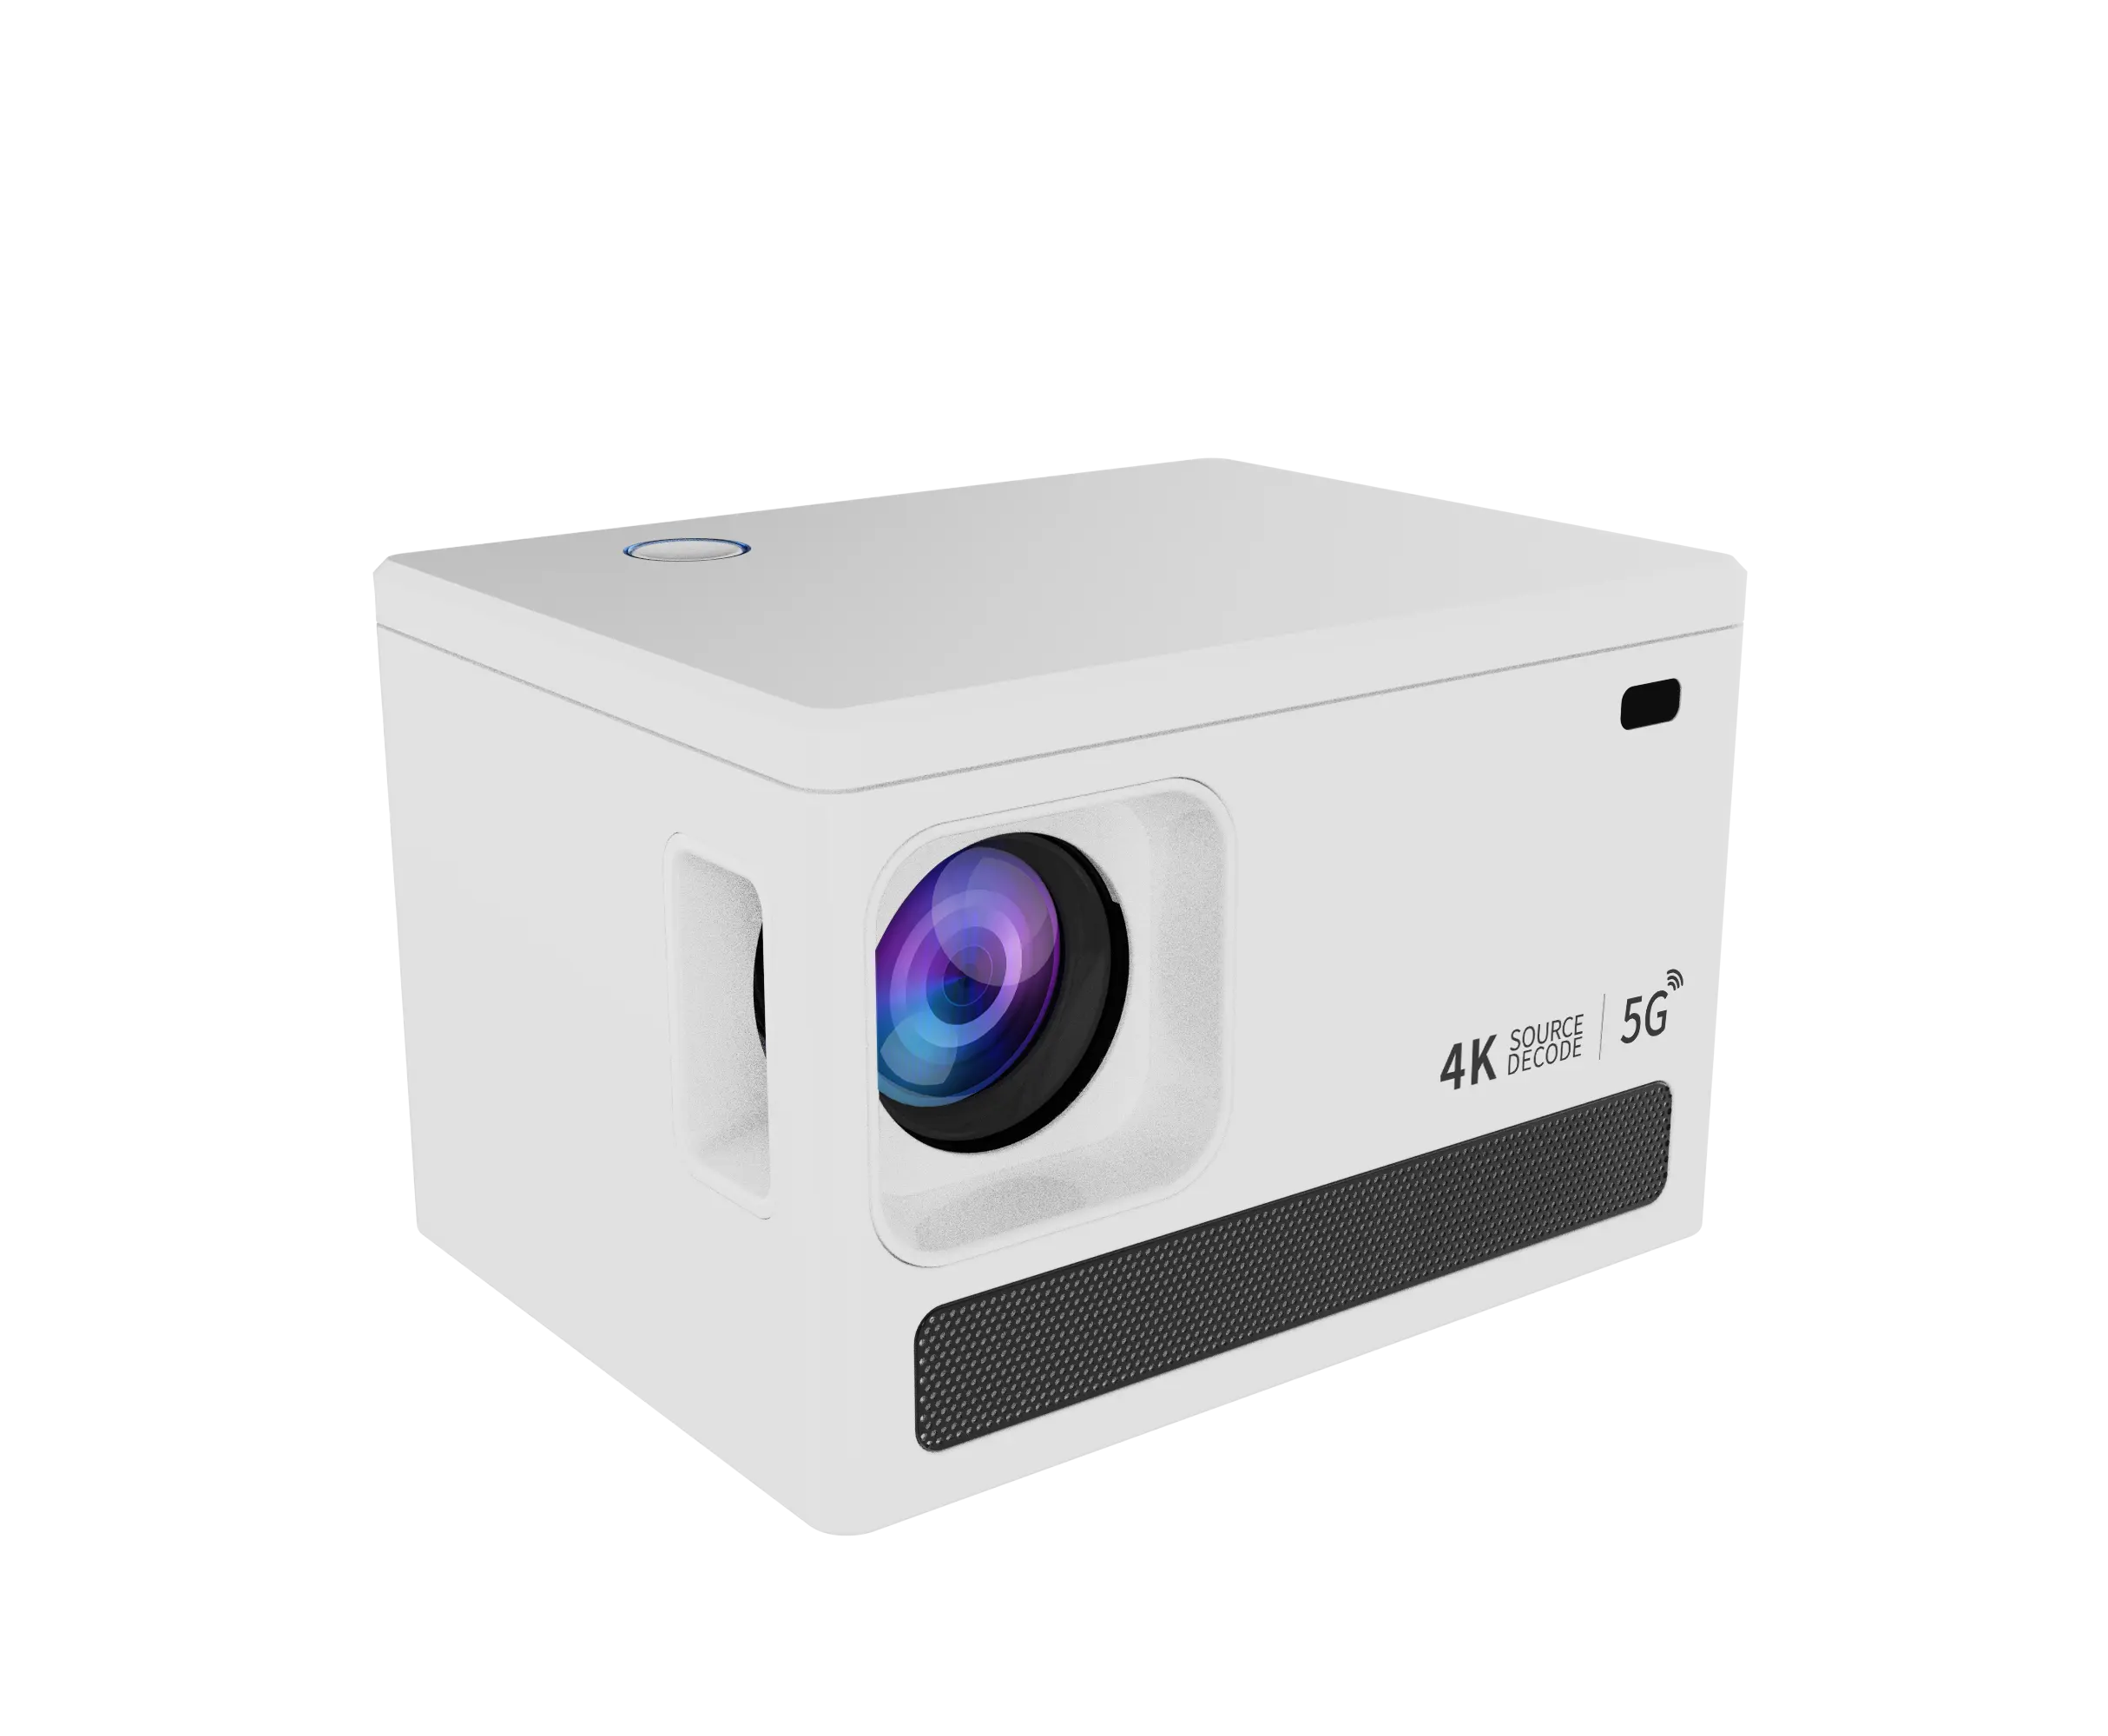 جهاز عرض الفيديو الذكي المحمول مزدوج واي فاي معدات العرض نظام تشغيل أندرويد 10 دقة فيديو 720P 4K